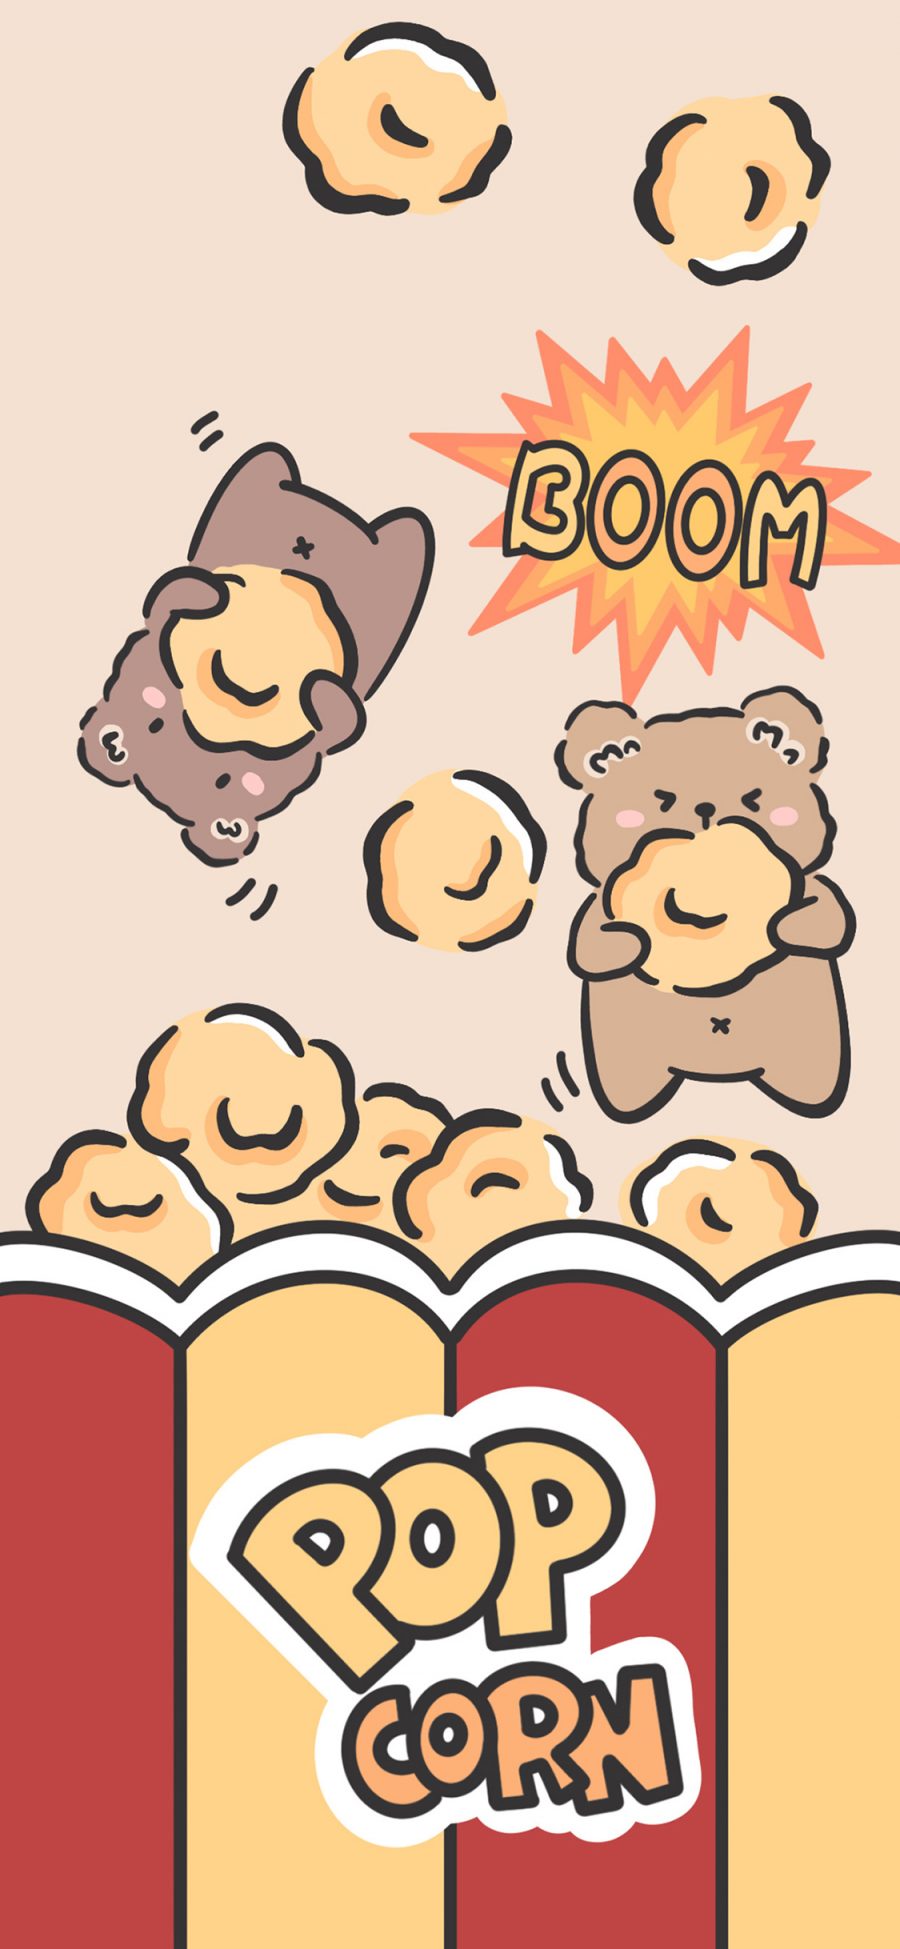 [2436×1125]爆米花 熊 boom 卡通 pop aorn 苹果手机动漫壁纸图片